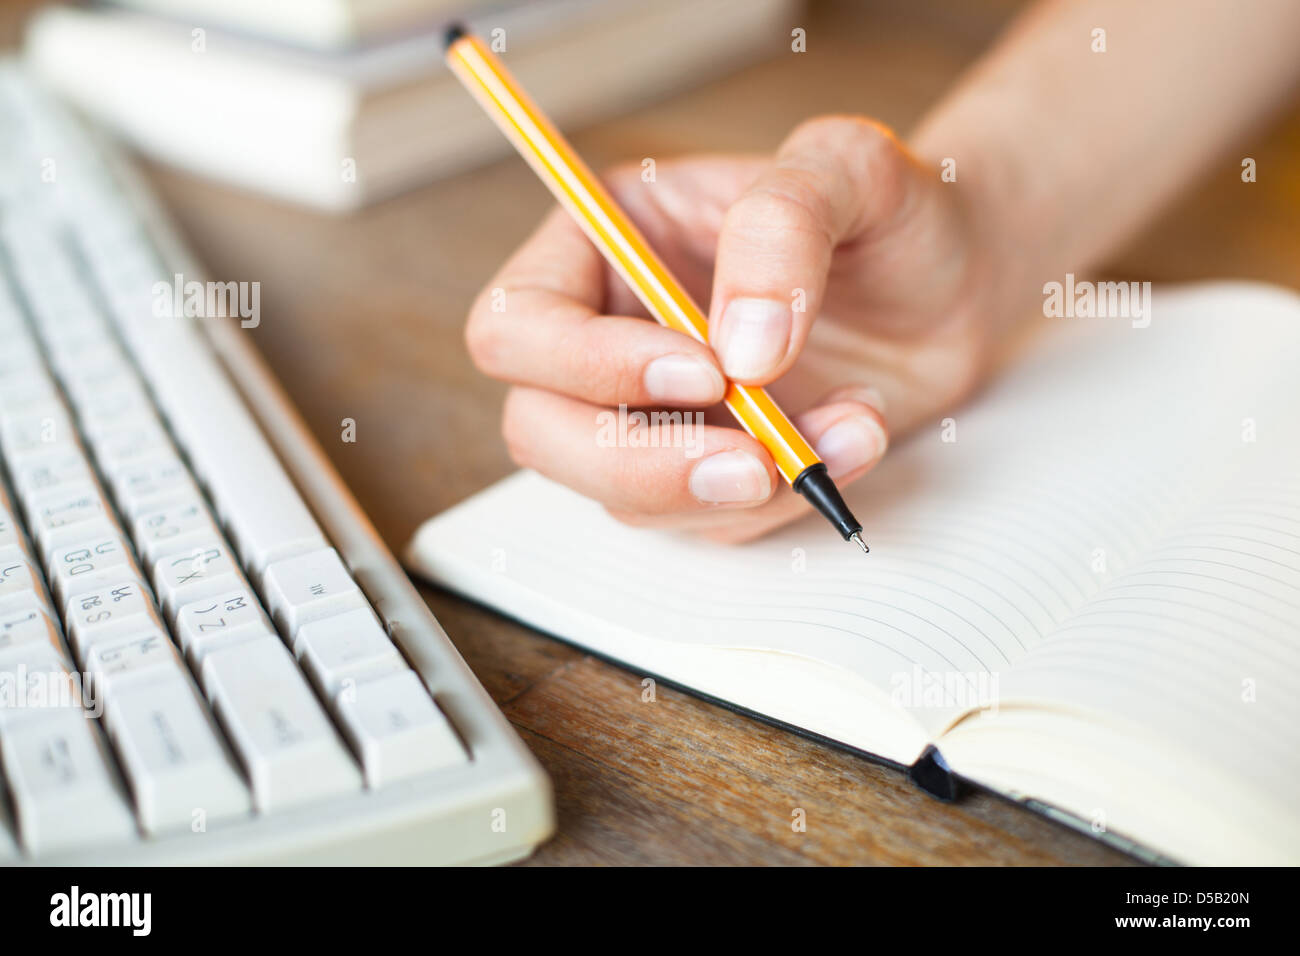 Mains écrit dans un ordinateur portable, un clavier, une pile de livres en arrière-plan Banque D'Images